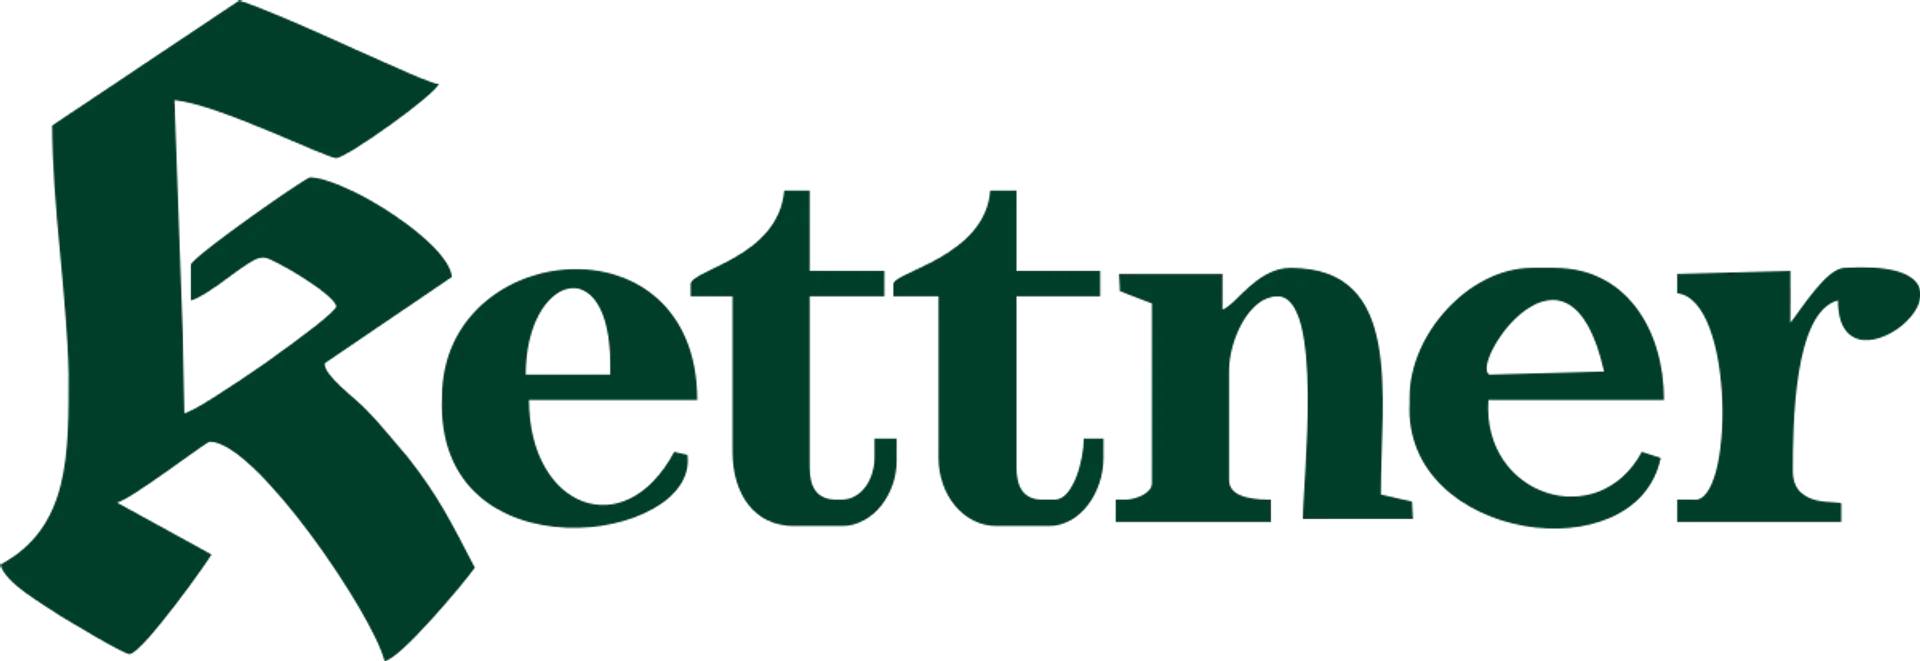 KETTNER logo die aktuell Flugblatt